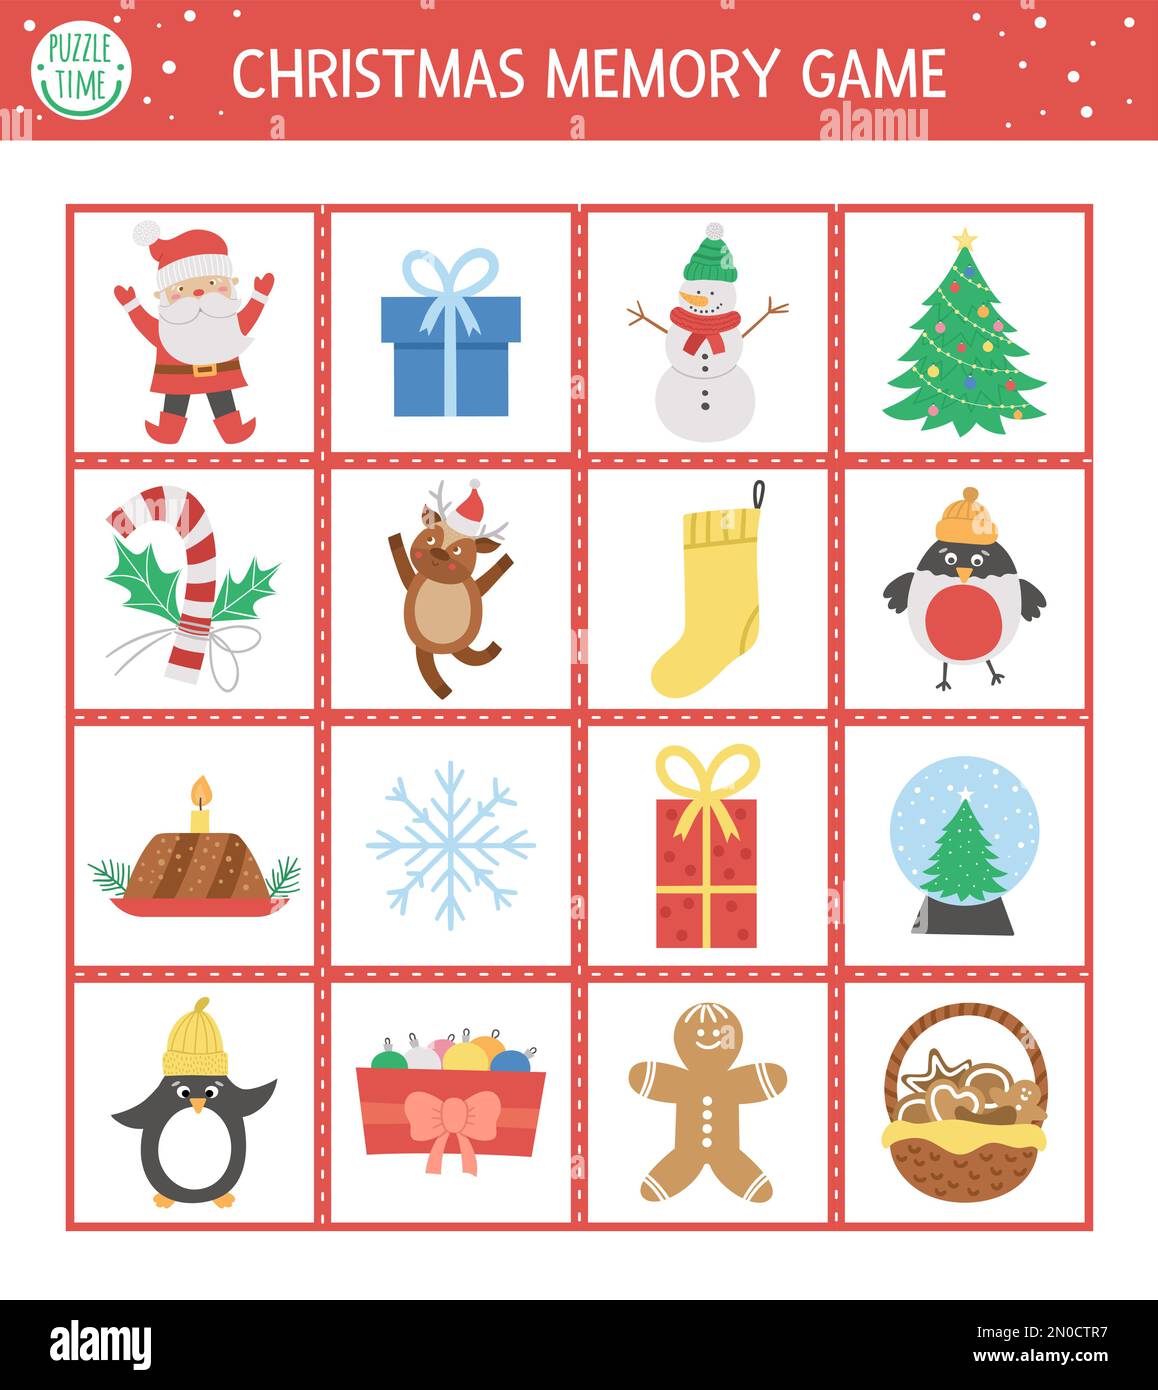 Weihnachtskarten mit traditionellen Weihnachtssymbolen. Passende Aktivität zu lustigen Charakteren. Denken Sie daran und finden Sie die richtige Karte. Einfacher Winter p Stock Vektor